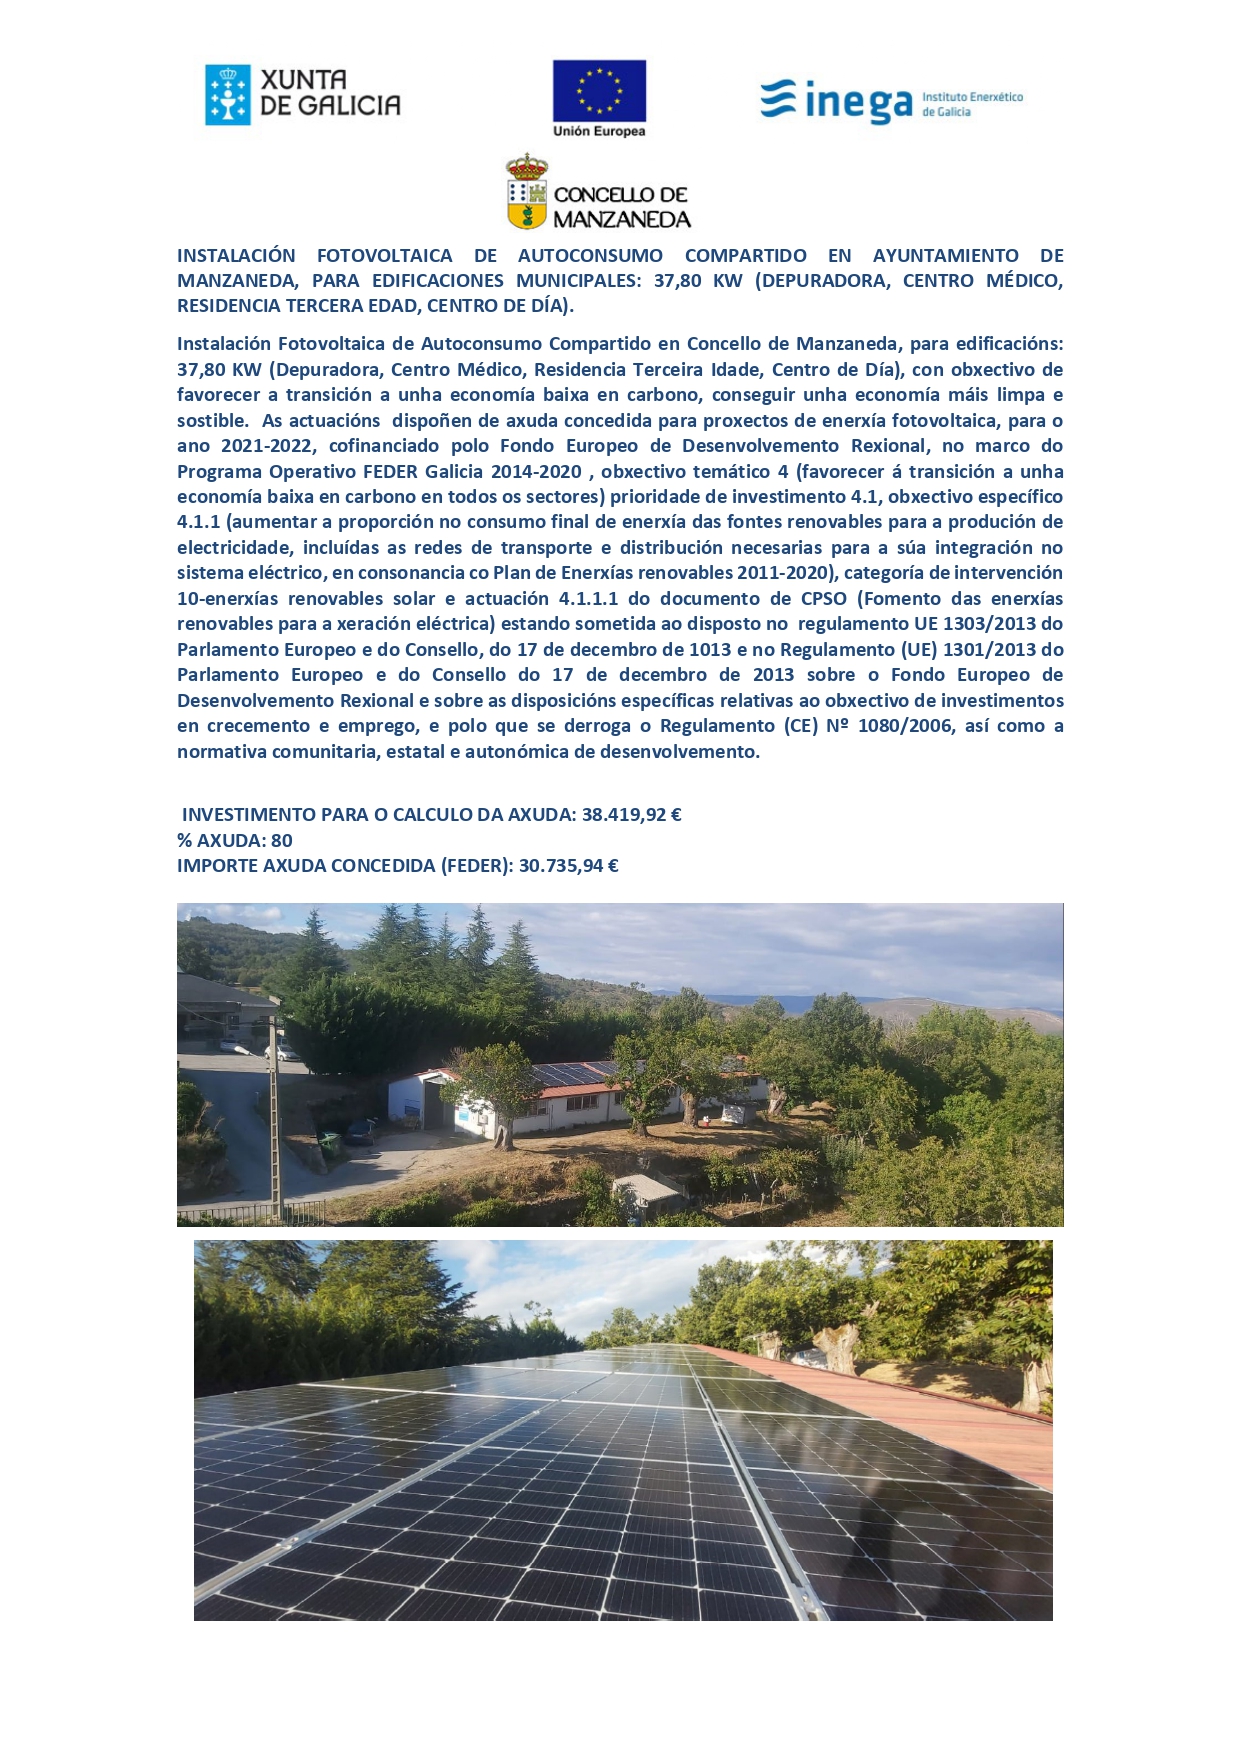 Instalación Fotovoltaica de Autoconsumo Compartido Axuda concedida para proxectos de enerxía fotovoltaica 2021-2022 Programa Operativo FEDER Galicia 2014-2020